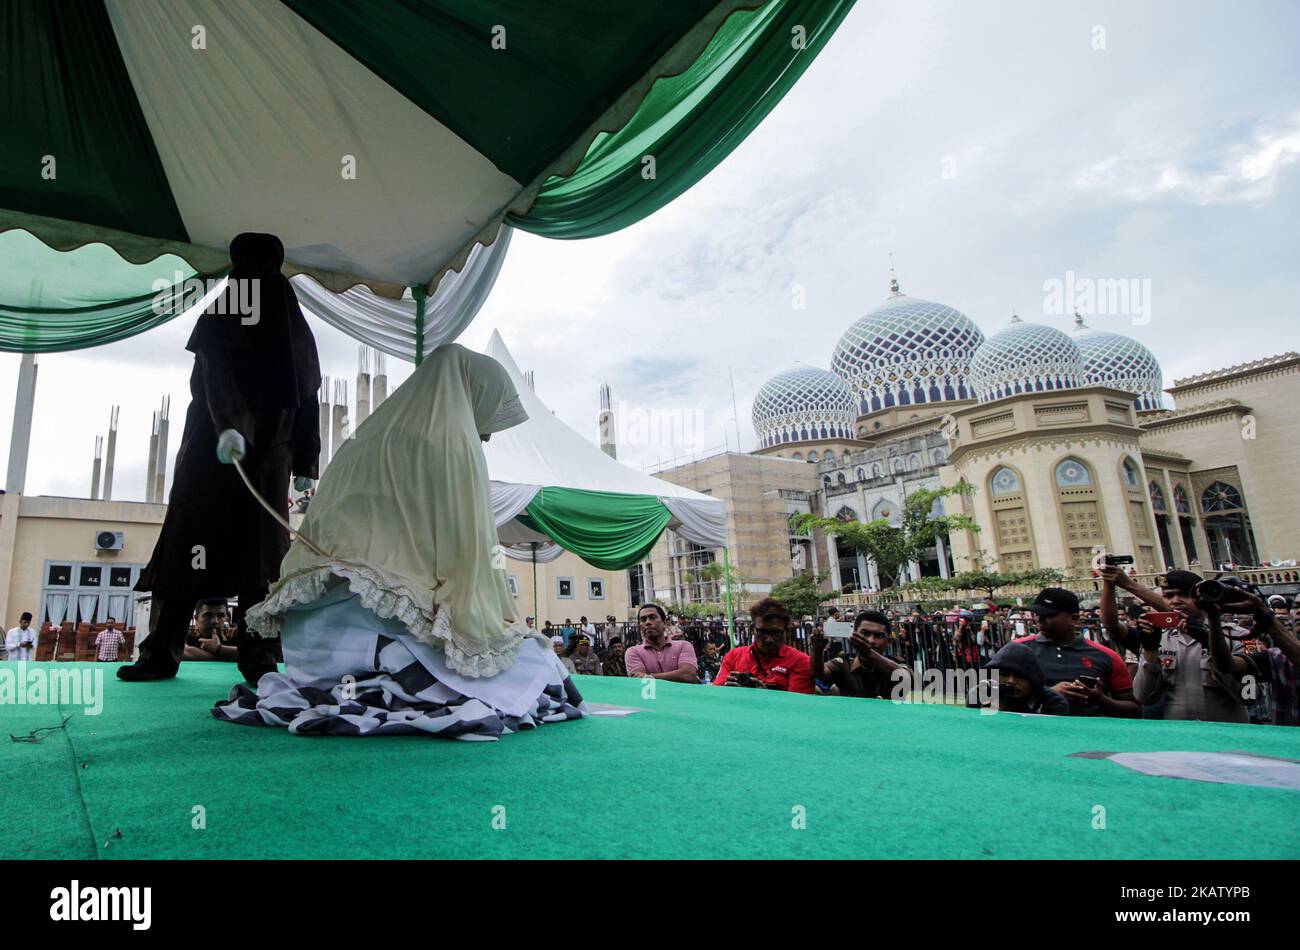 Una mujer acehnesa es azotada ante el público por violar la ley sharia en la mezquita del Centro Islámico Lhokseumawe, en la provincia de Aceh, Indonesia, el 22 de diciembre de 2017. Los azotes son una forma de castigo impuesta en Aceh por violar la ley islámica de la sharia. (Foto de Fachrul Reza/NurPhoto) Foto de stock